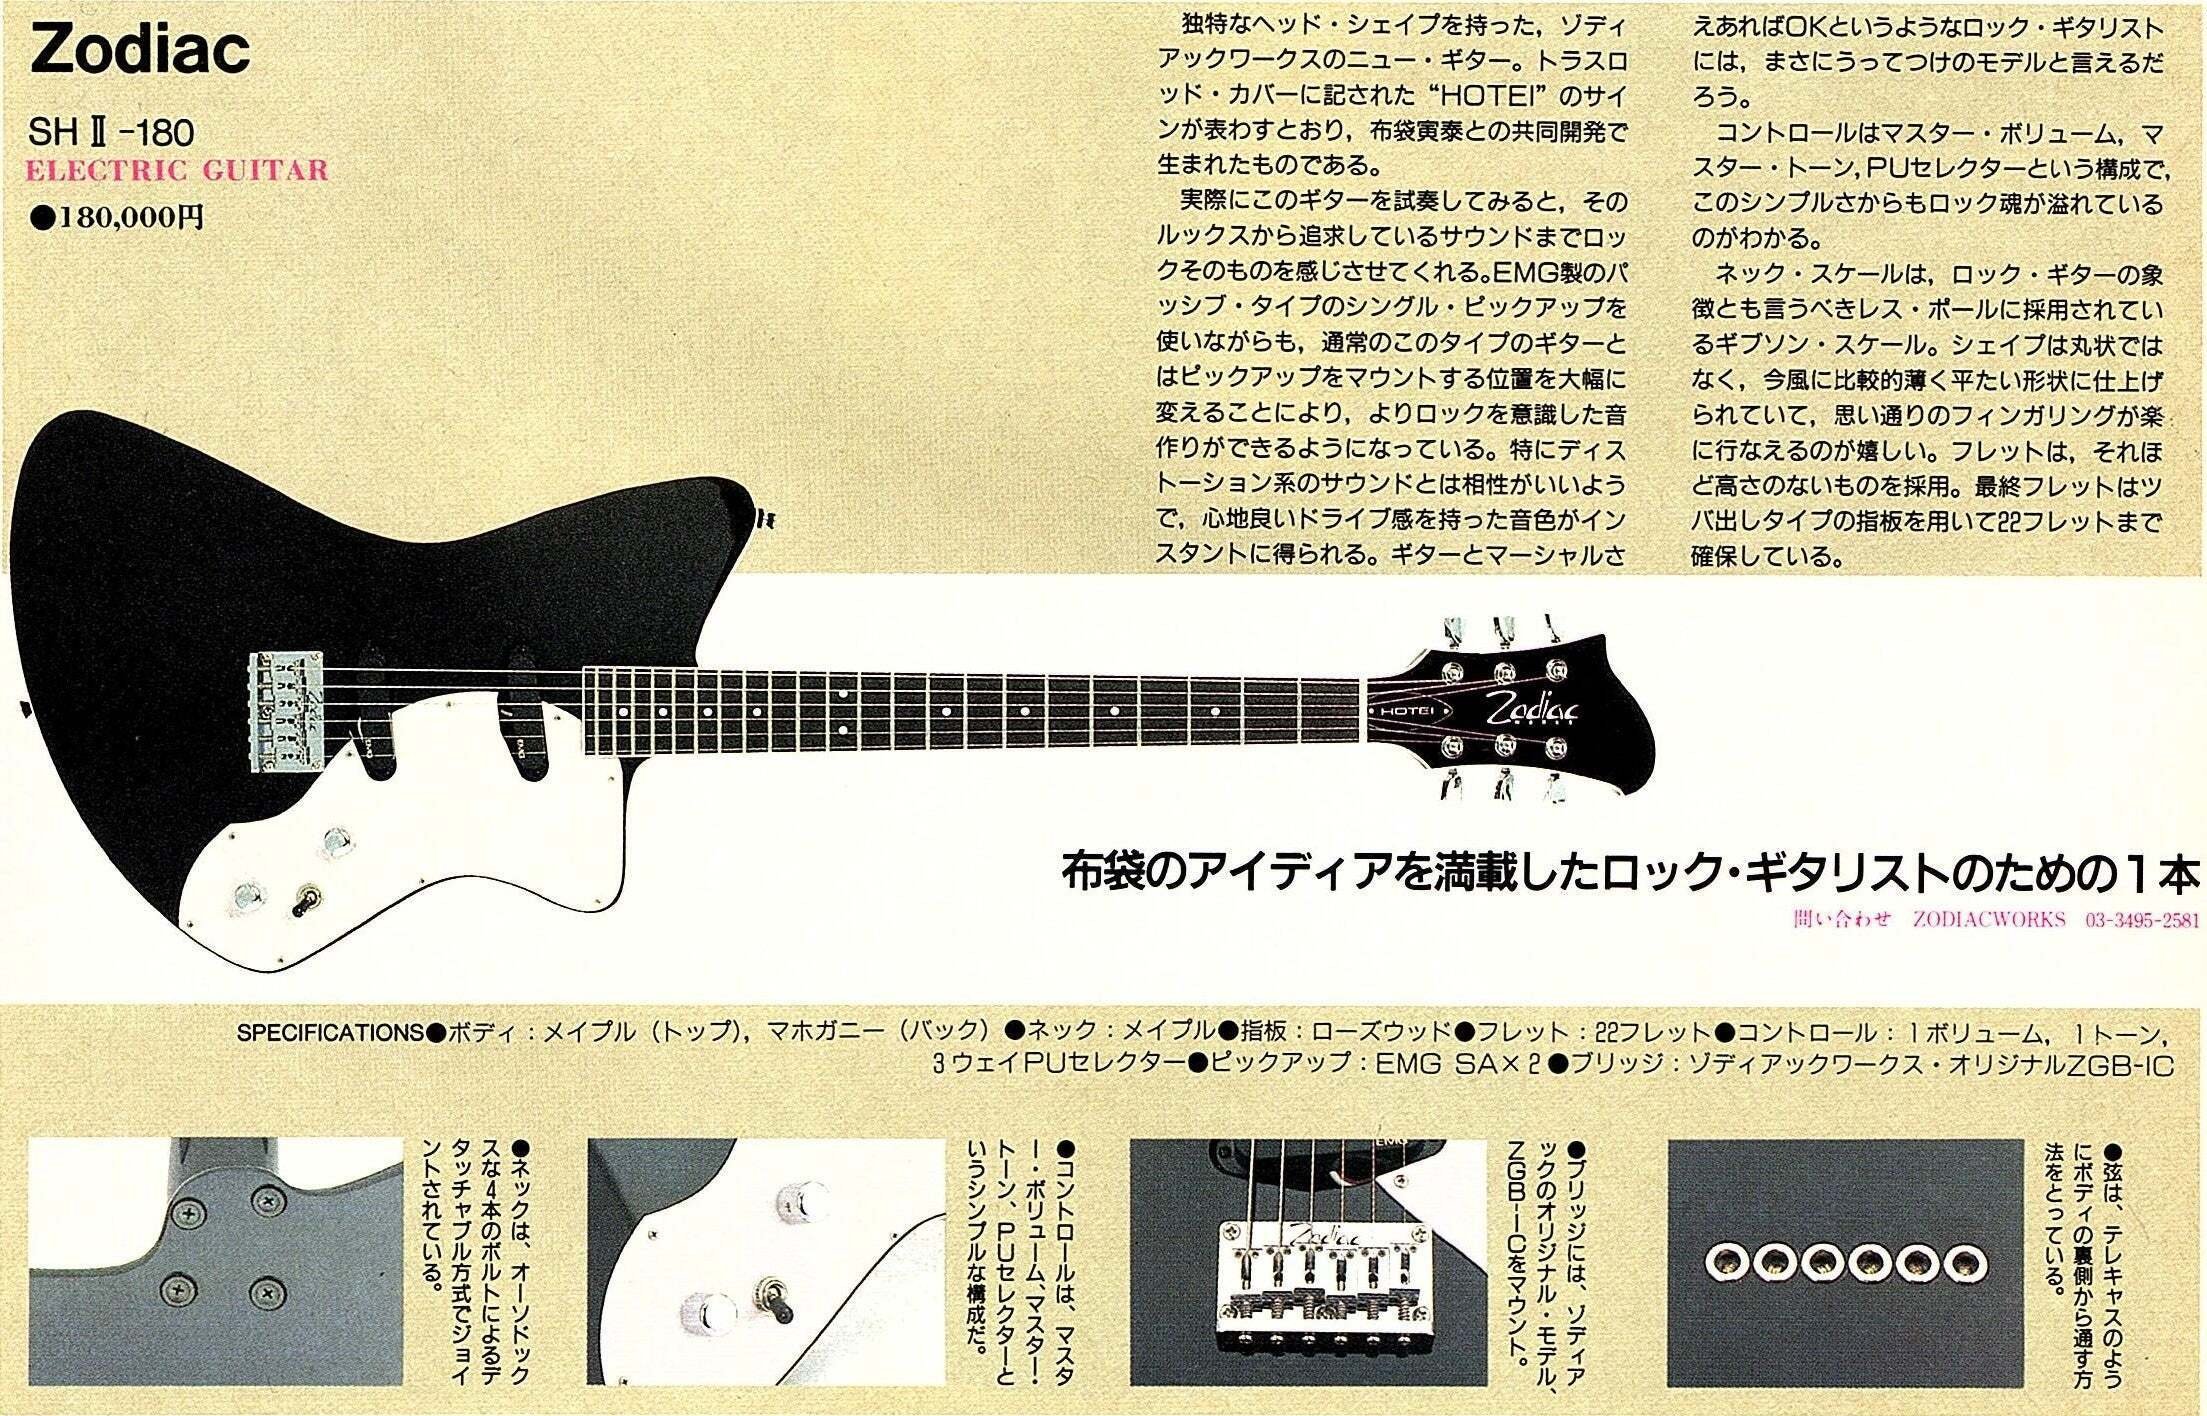 Fender LEAD3のZodiac Works SHⅡ-180（シャチ・布袋寅泰モデル）化 